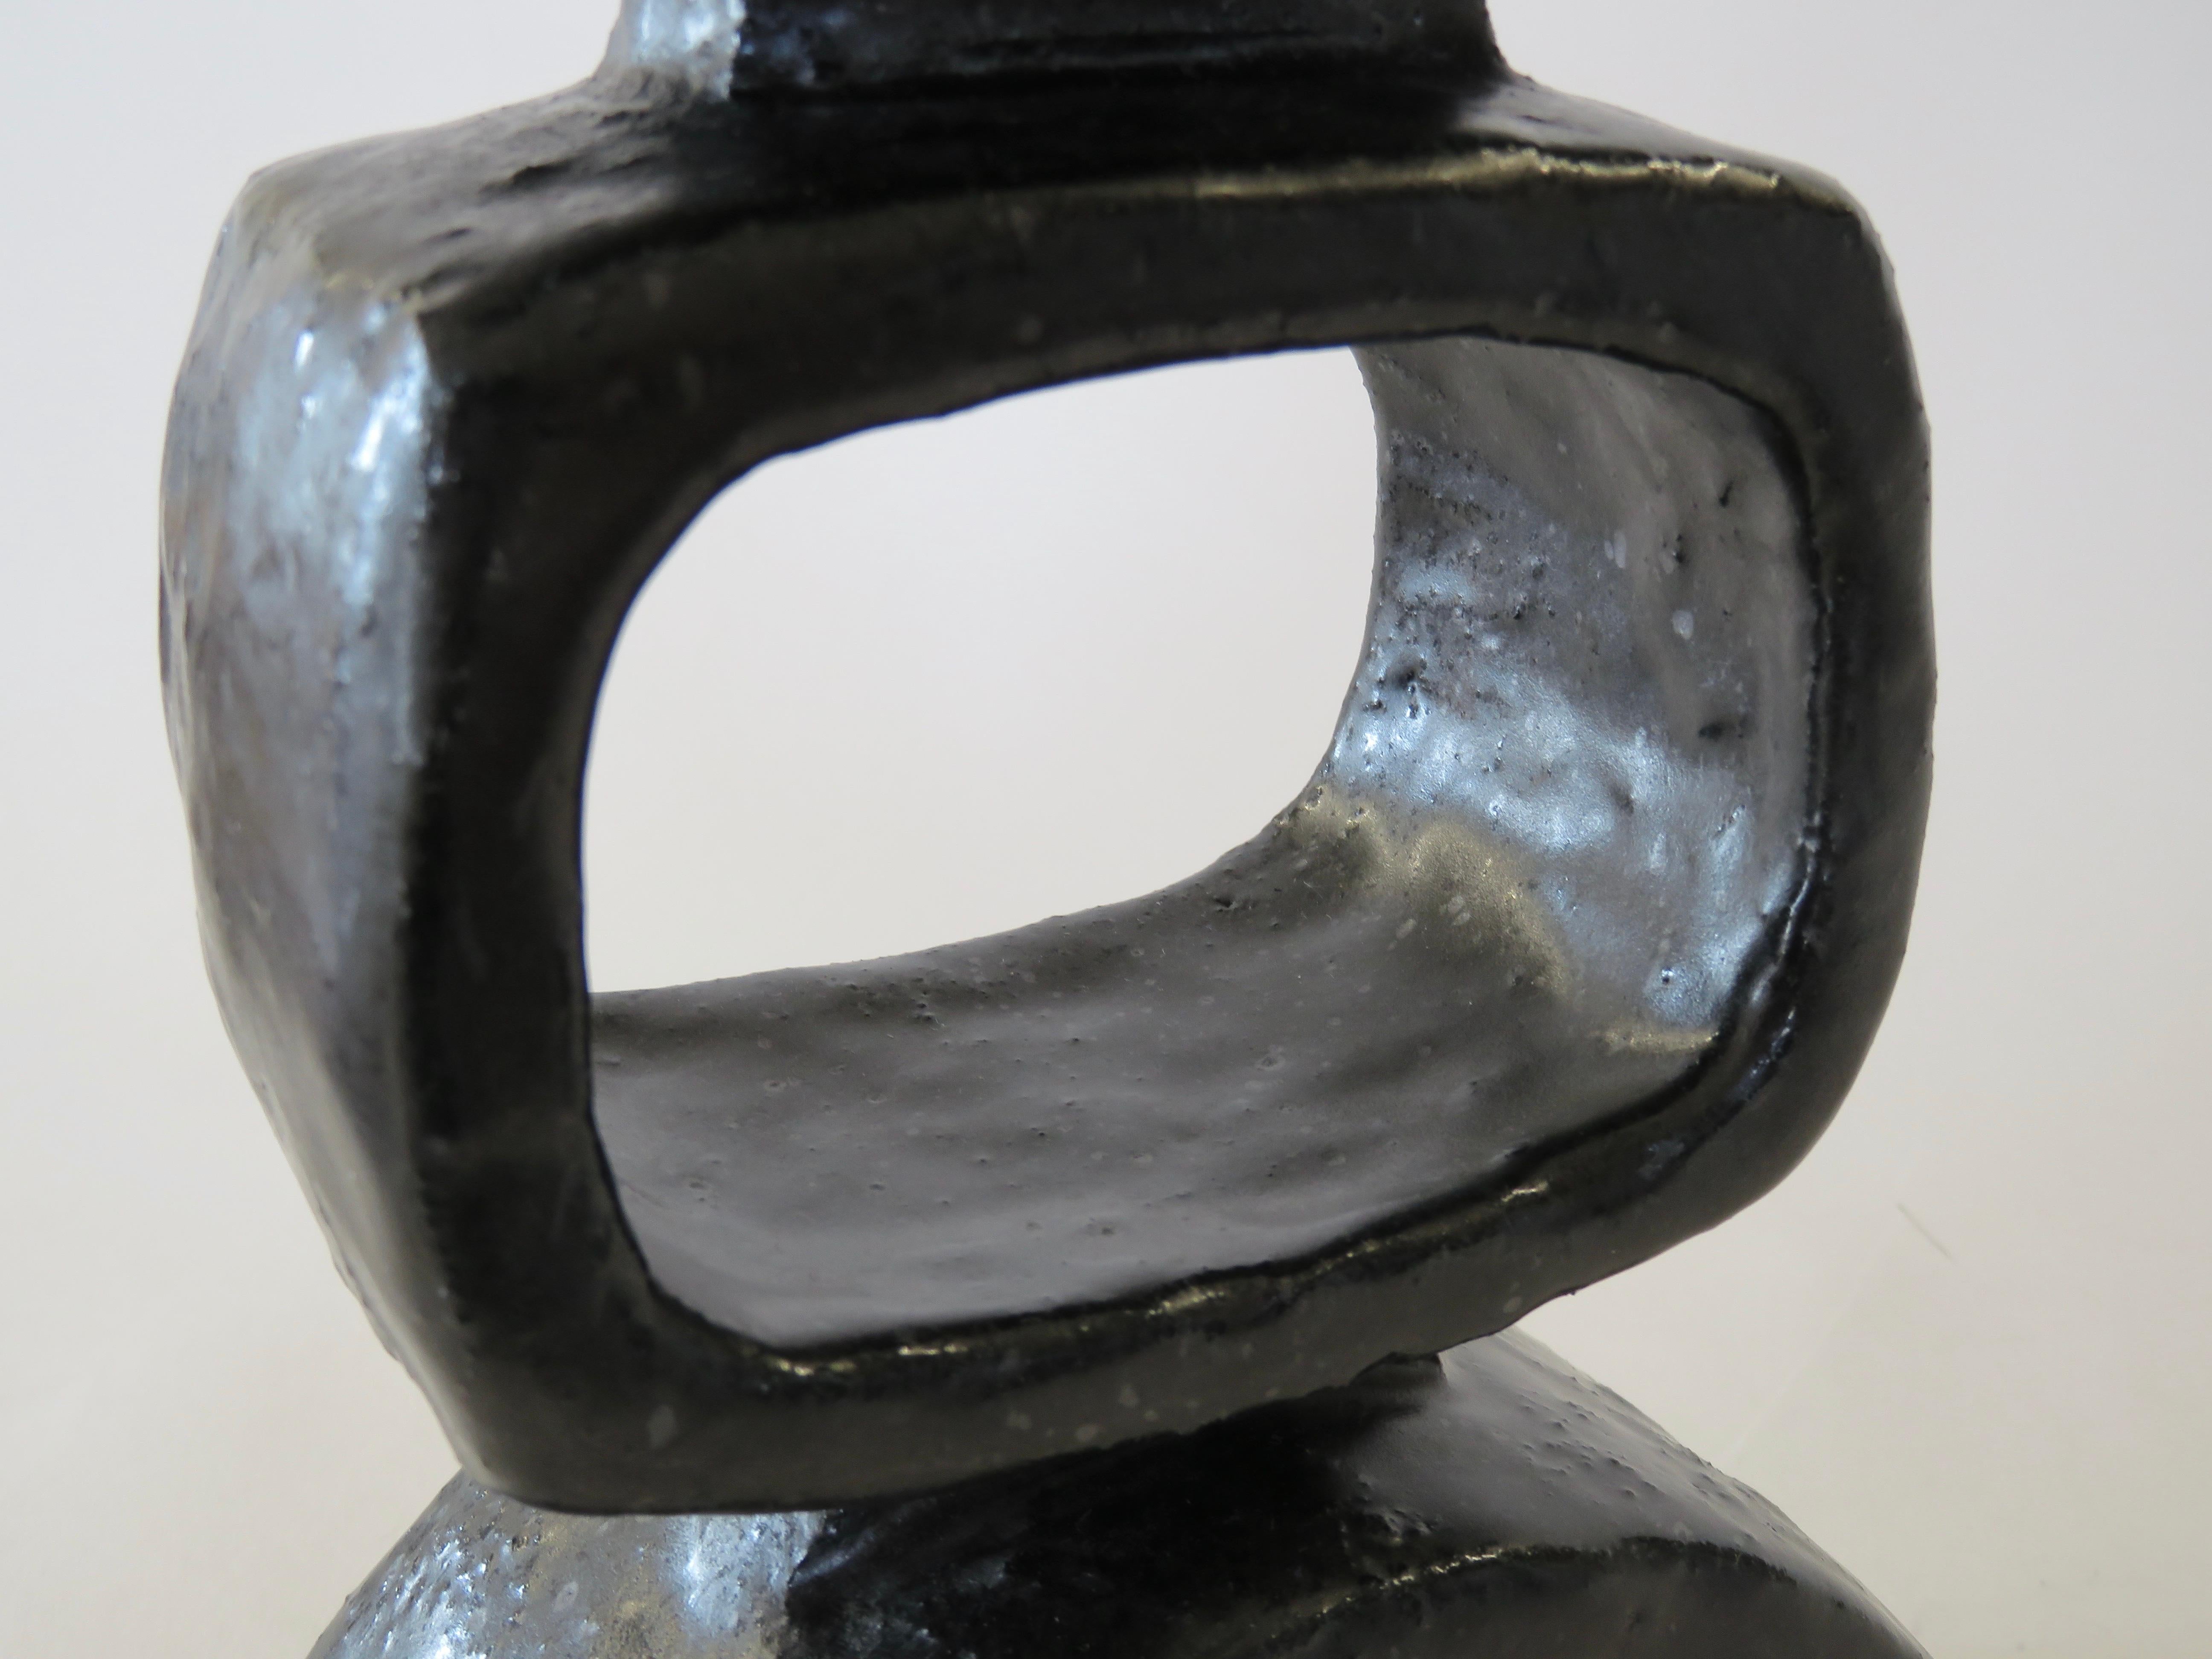 HandBuilt Modern TOTEM, 2 Rectangular Rings on Curved Base, Black Glazed Ceramic 10